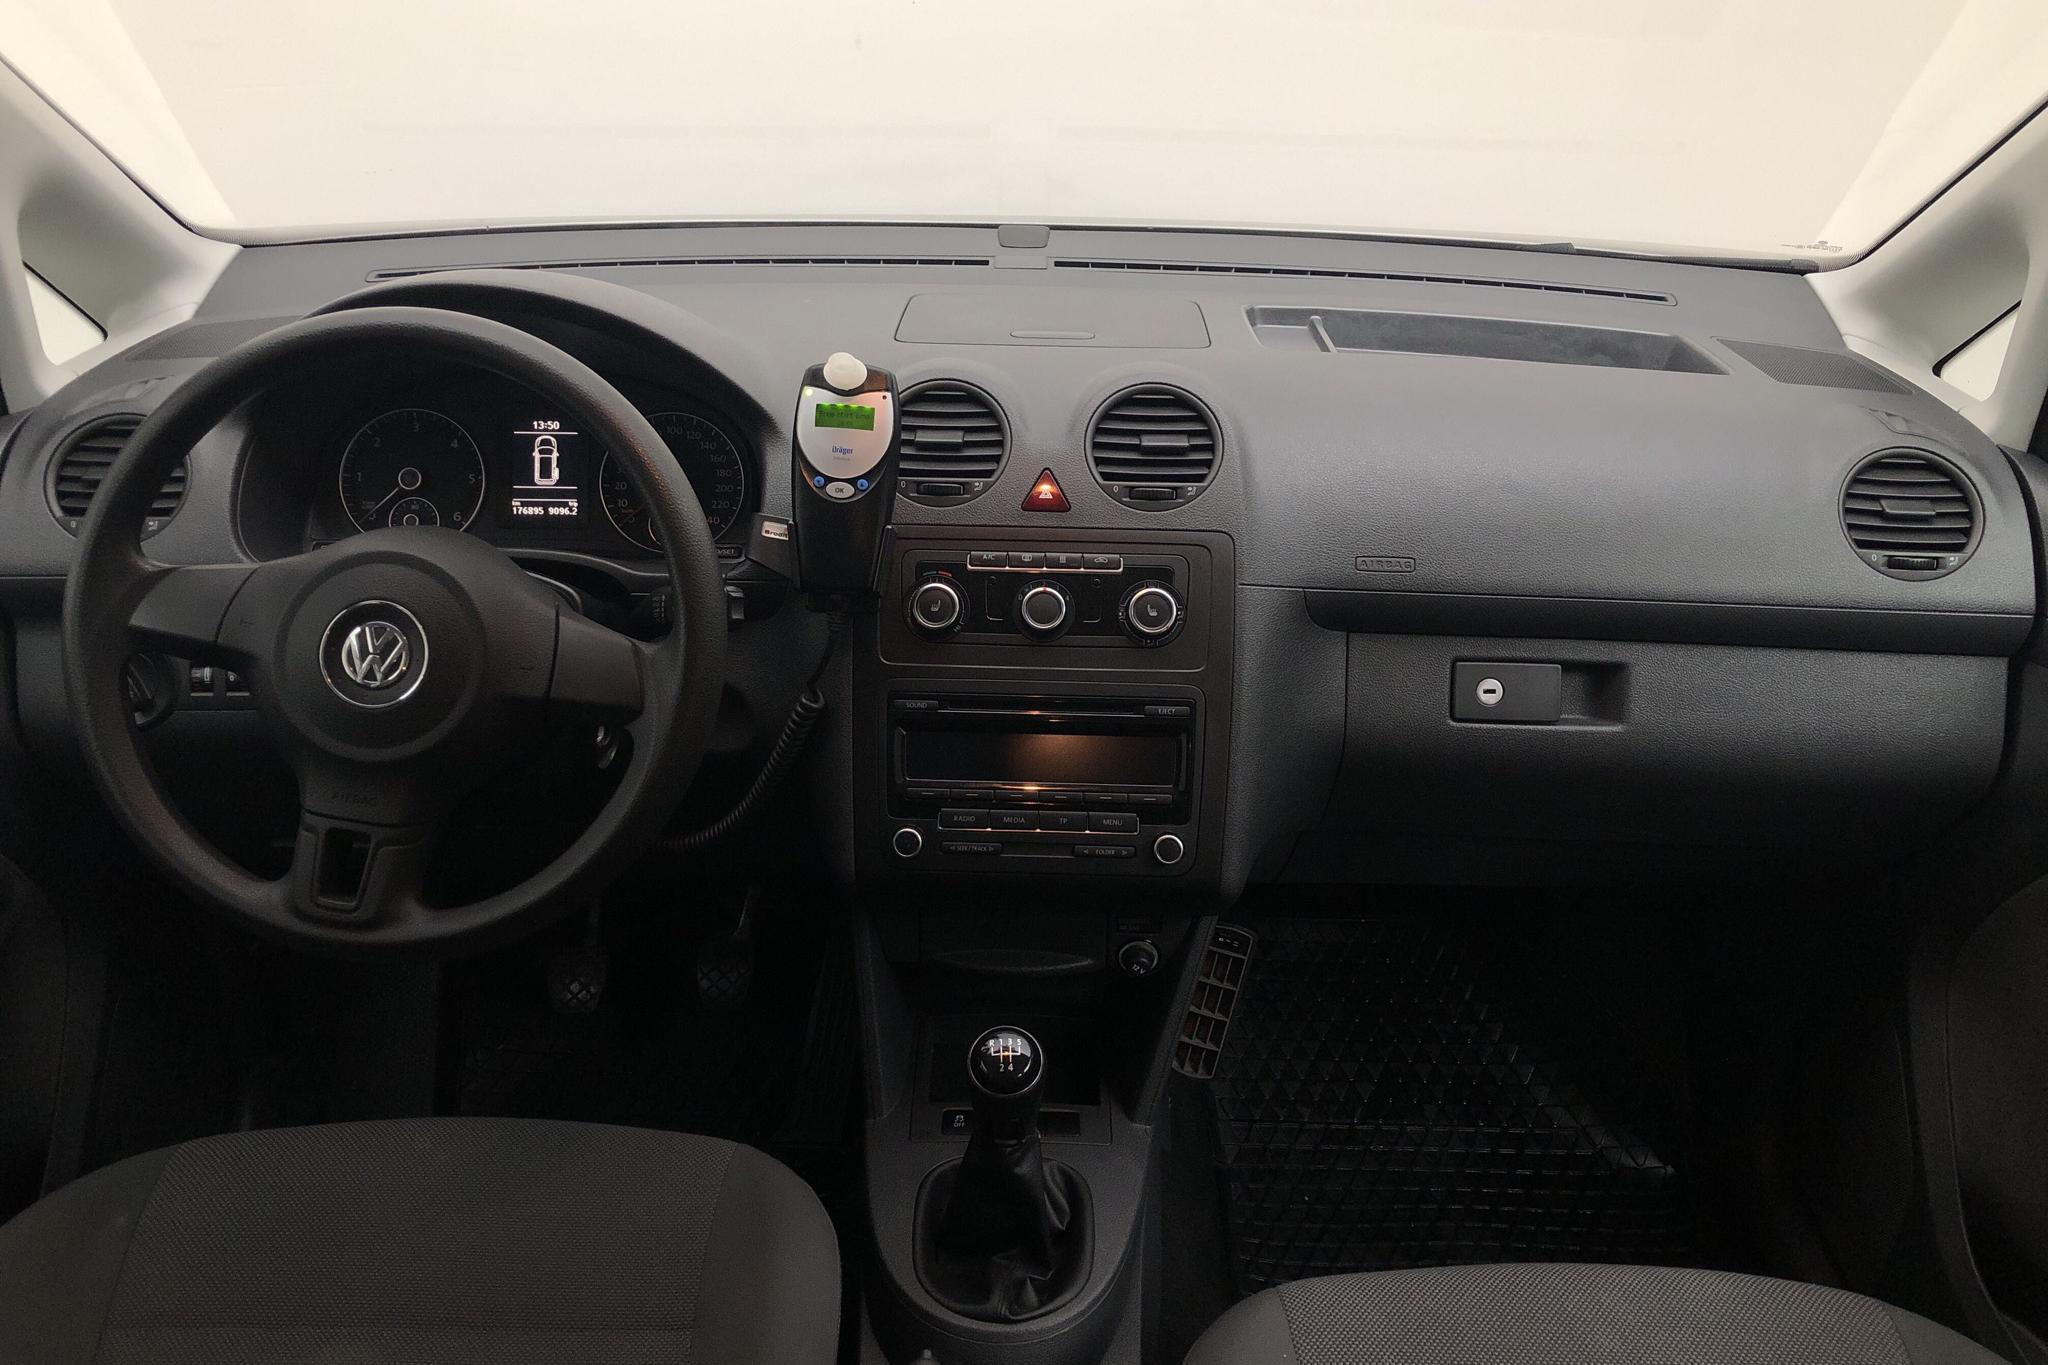 VW Caddy MPV 1.6 TDI (102hk) - 176 900 km - Manual - white - 2013